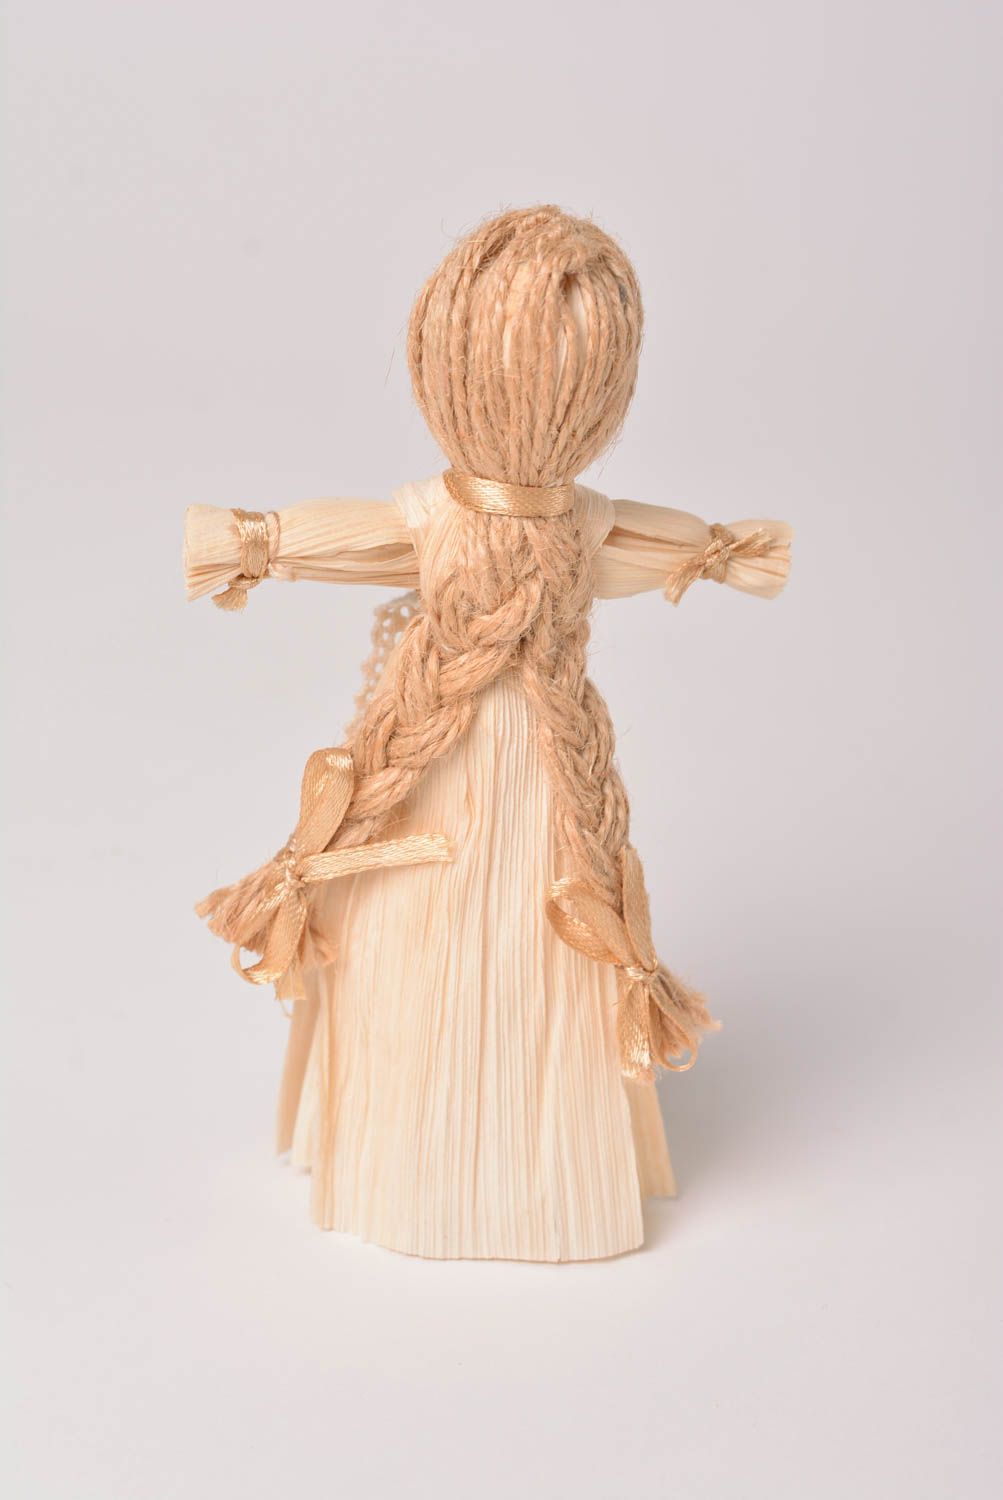 Игрушка из соломы хэнд мэйд славянский оберег кукла из соломы Панночка фото 5